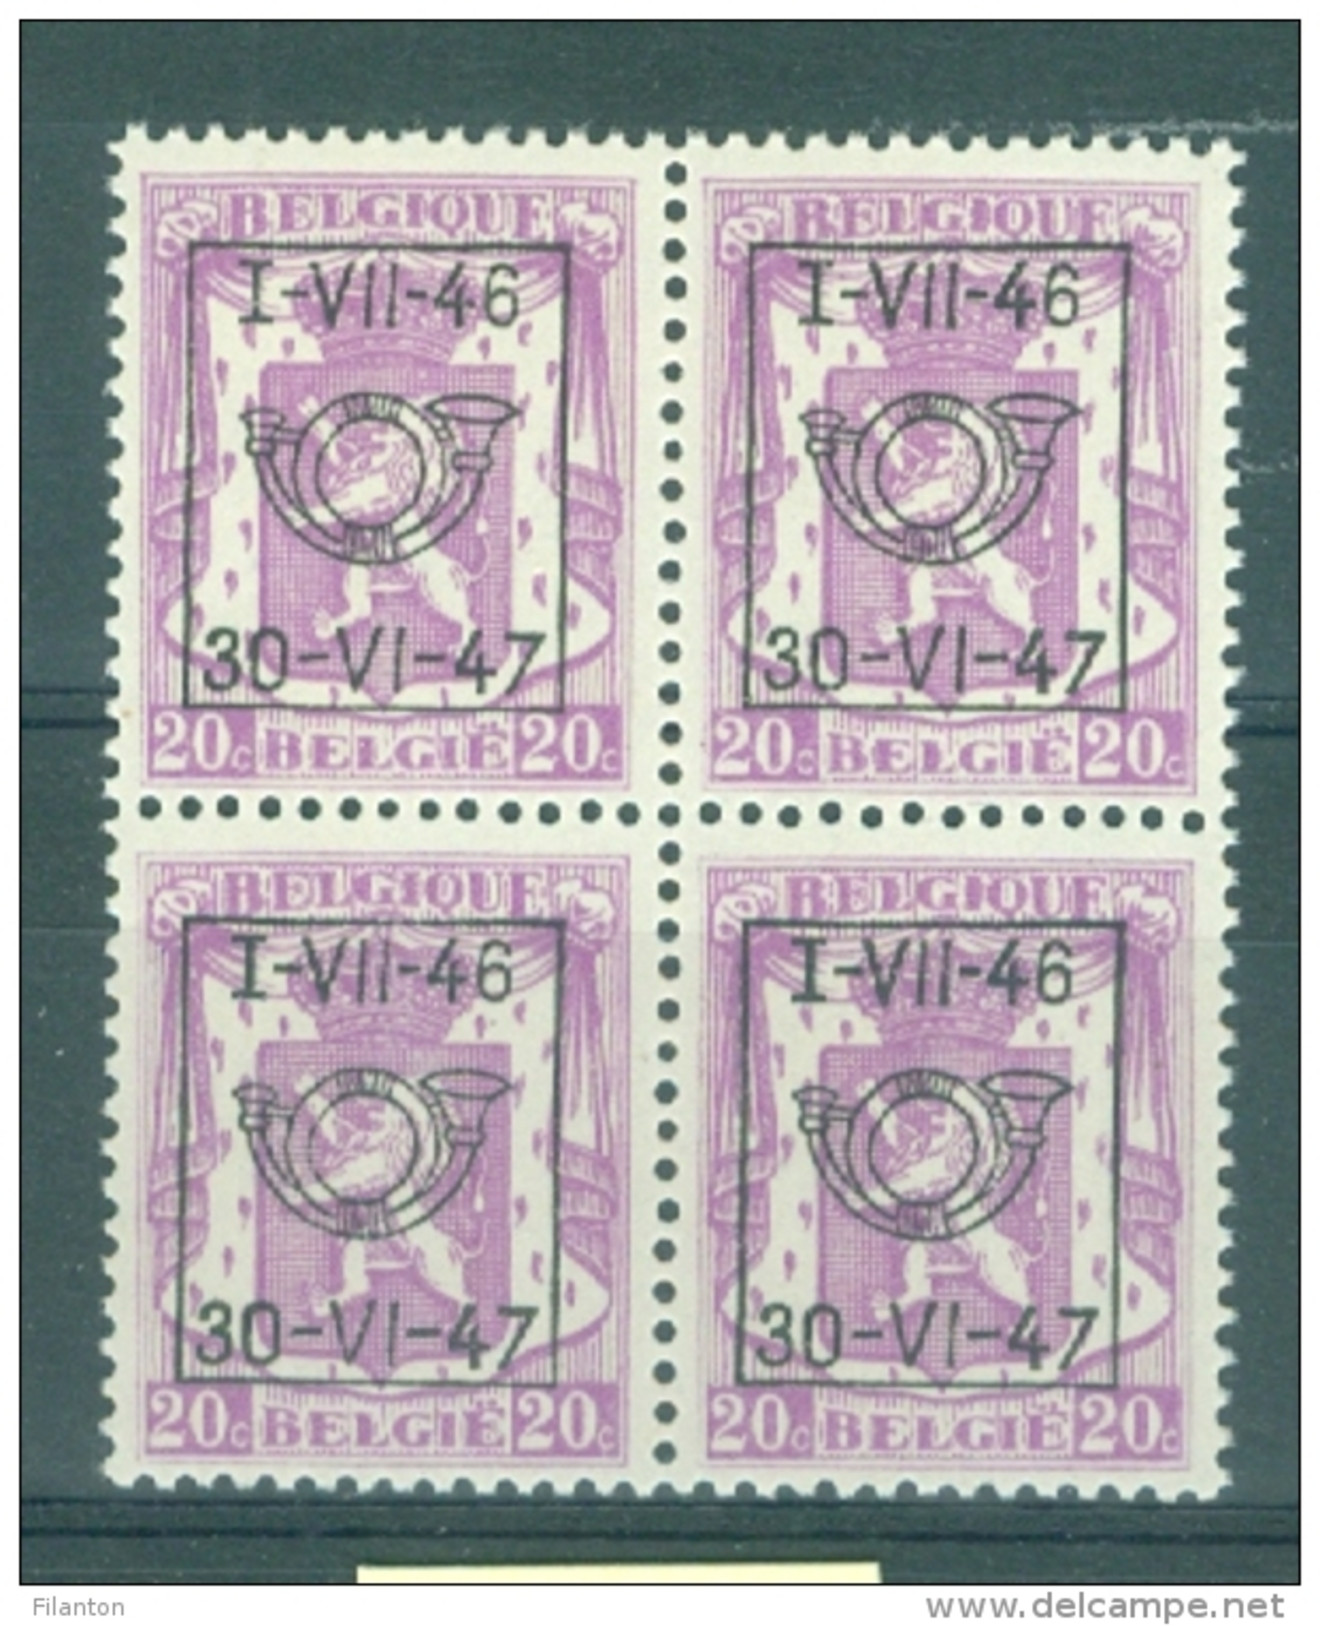 BELGIE - OBP Nr PRE 555 (blok Van 4) - TYPO Preo's/Precancels - MNH** - Typo Precancels 1936-51 (Small Seal Of The State)